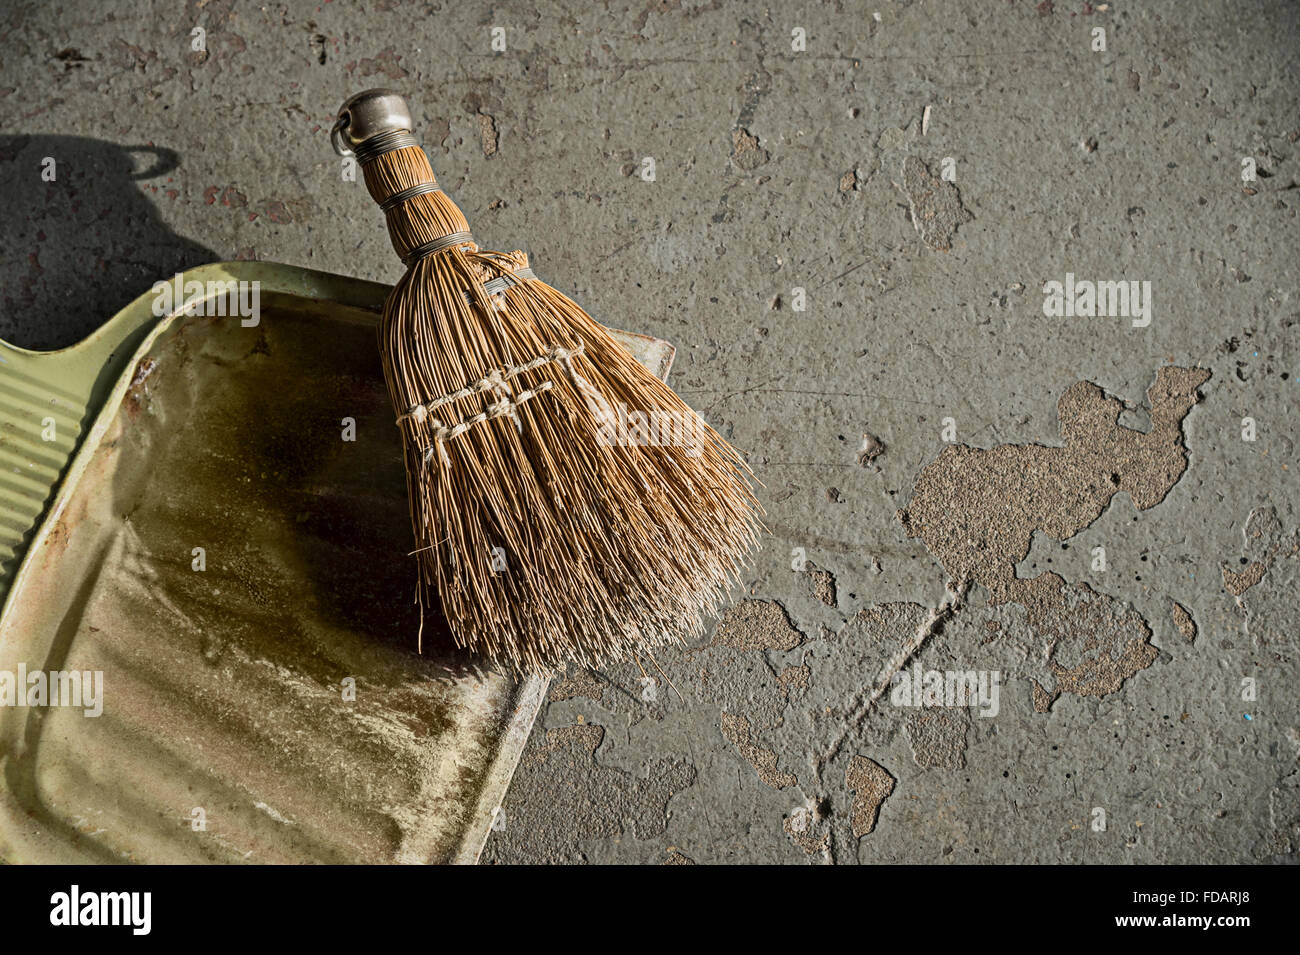 Bandeja de polvo y el cepillo sobre suelo de cemento Foto de stock